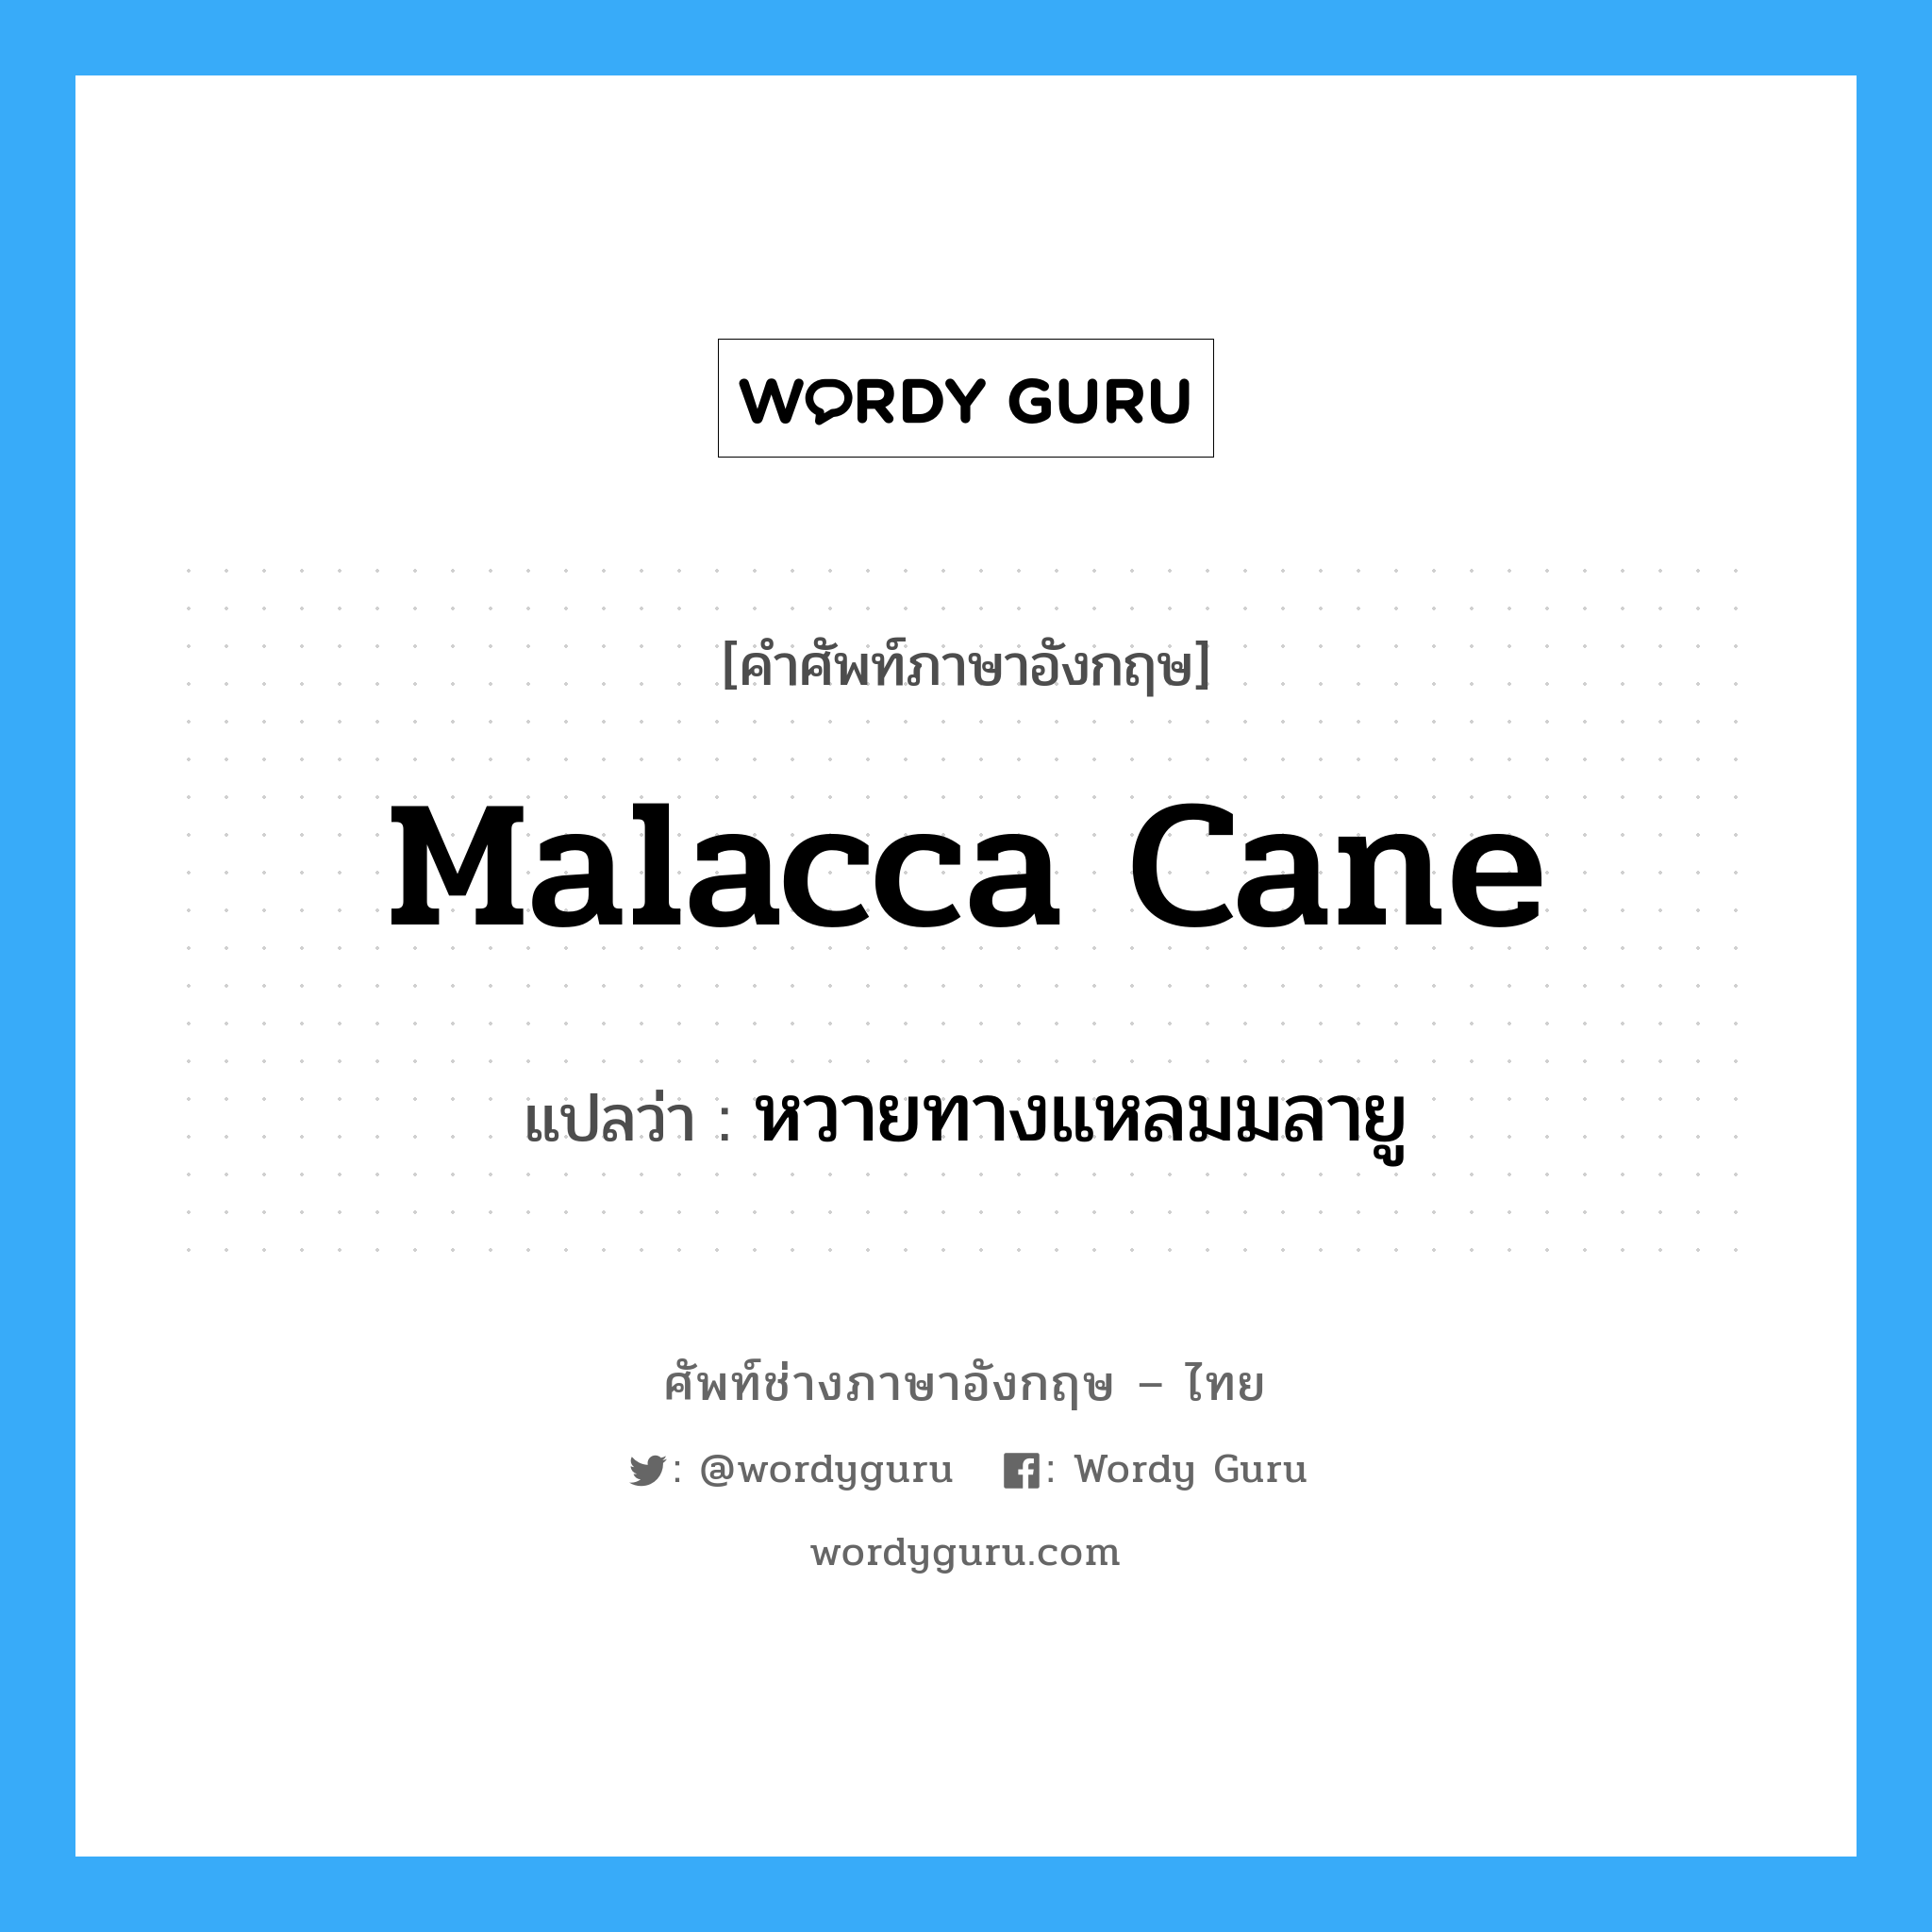 หวายทางแหลมมลายู ภาษาอังกฤษ?, คำศัพท์ช่างภาษาอังกฤษ - ไทย หวายทางแหลมมลายู คำศัพท์ภาษาอังกฤษ หวายทางแหลมมลายู แปลว่า malacca cane